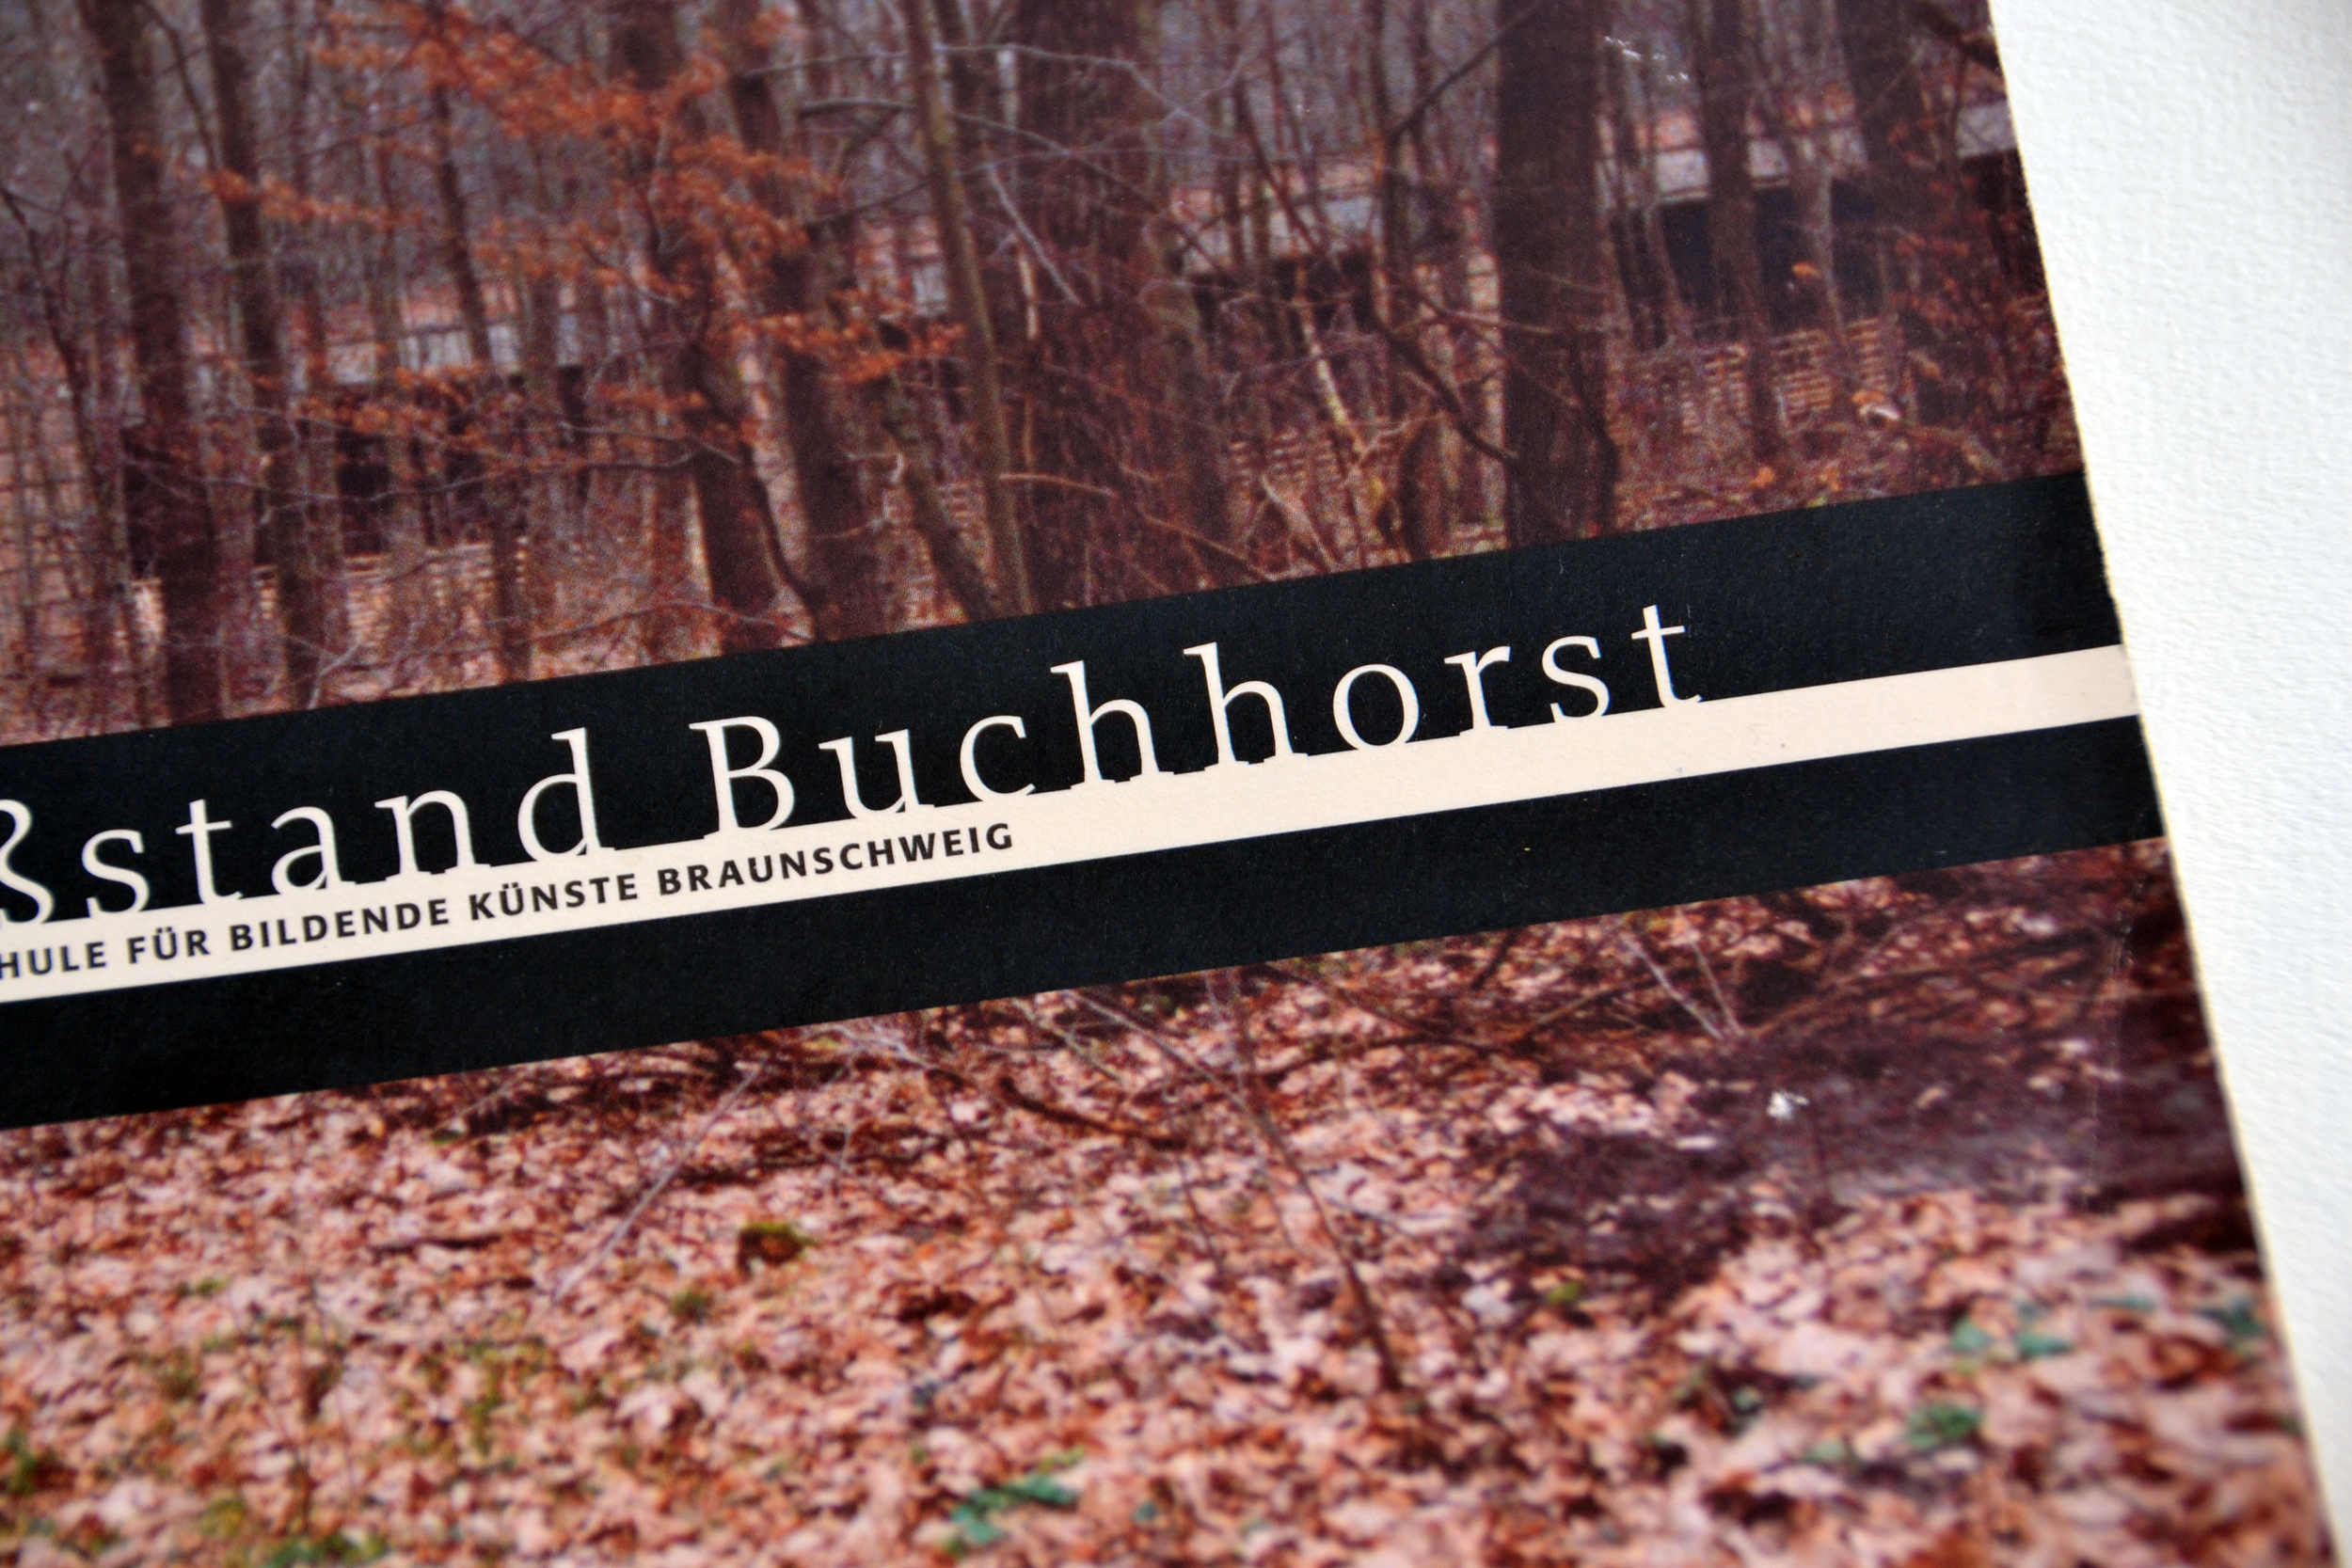 Buchhorst02.jpg